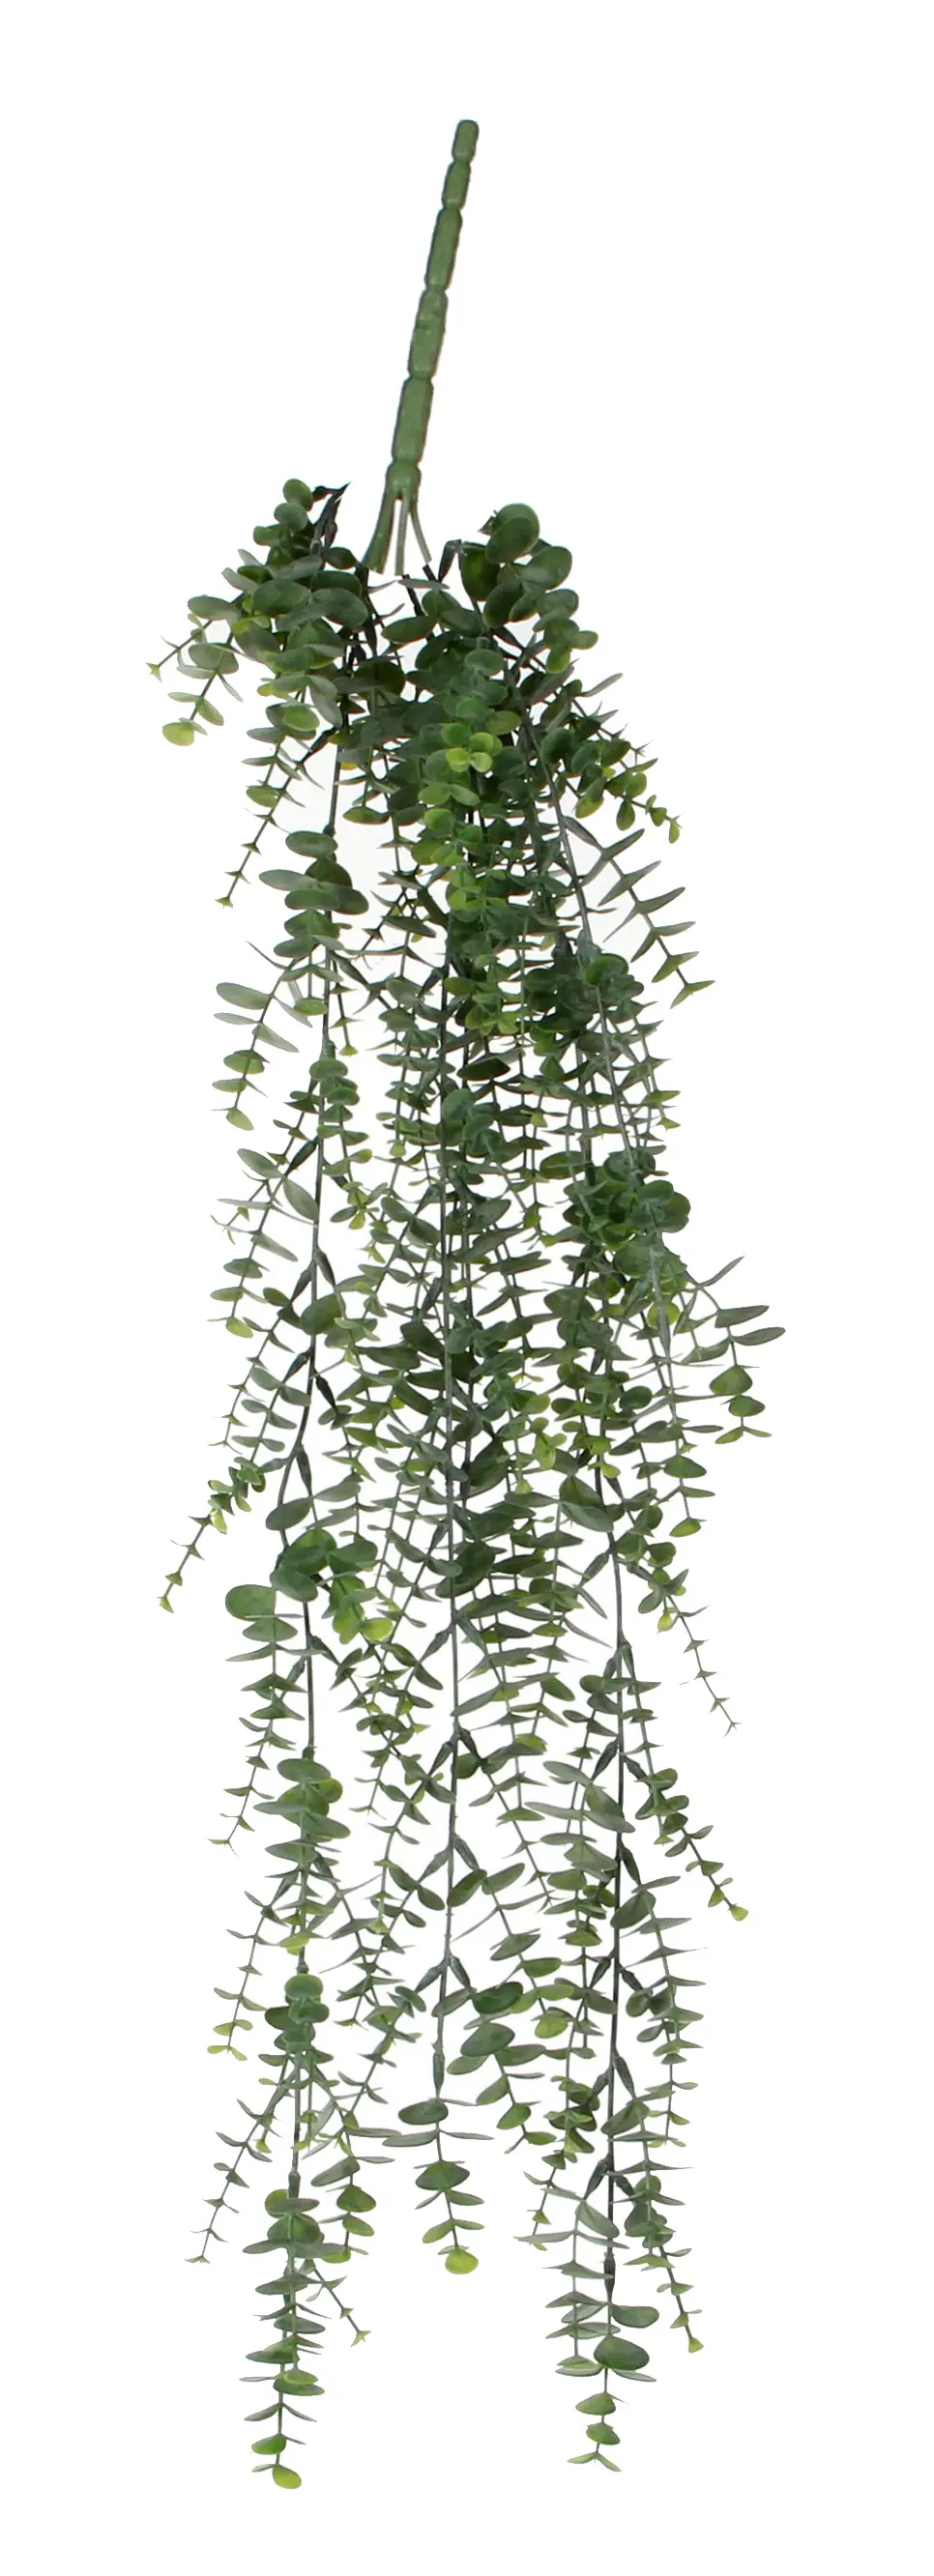 K眉nstliche H盲ngepflanze Eukalyptus